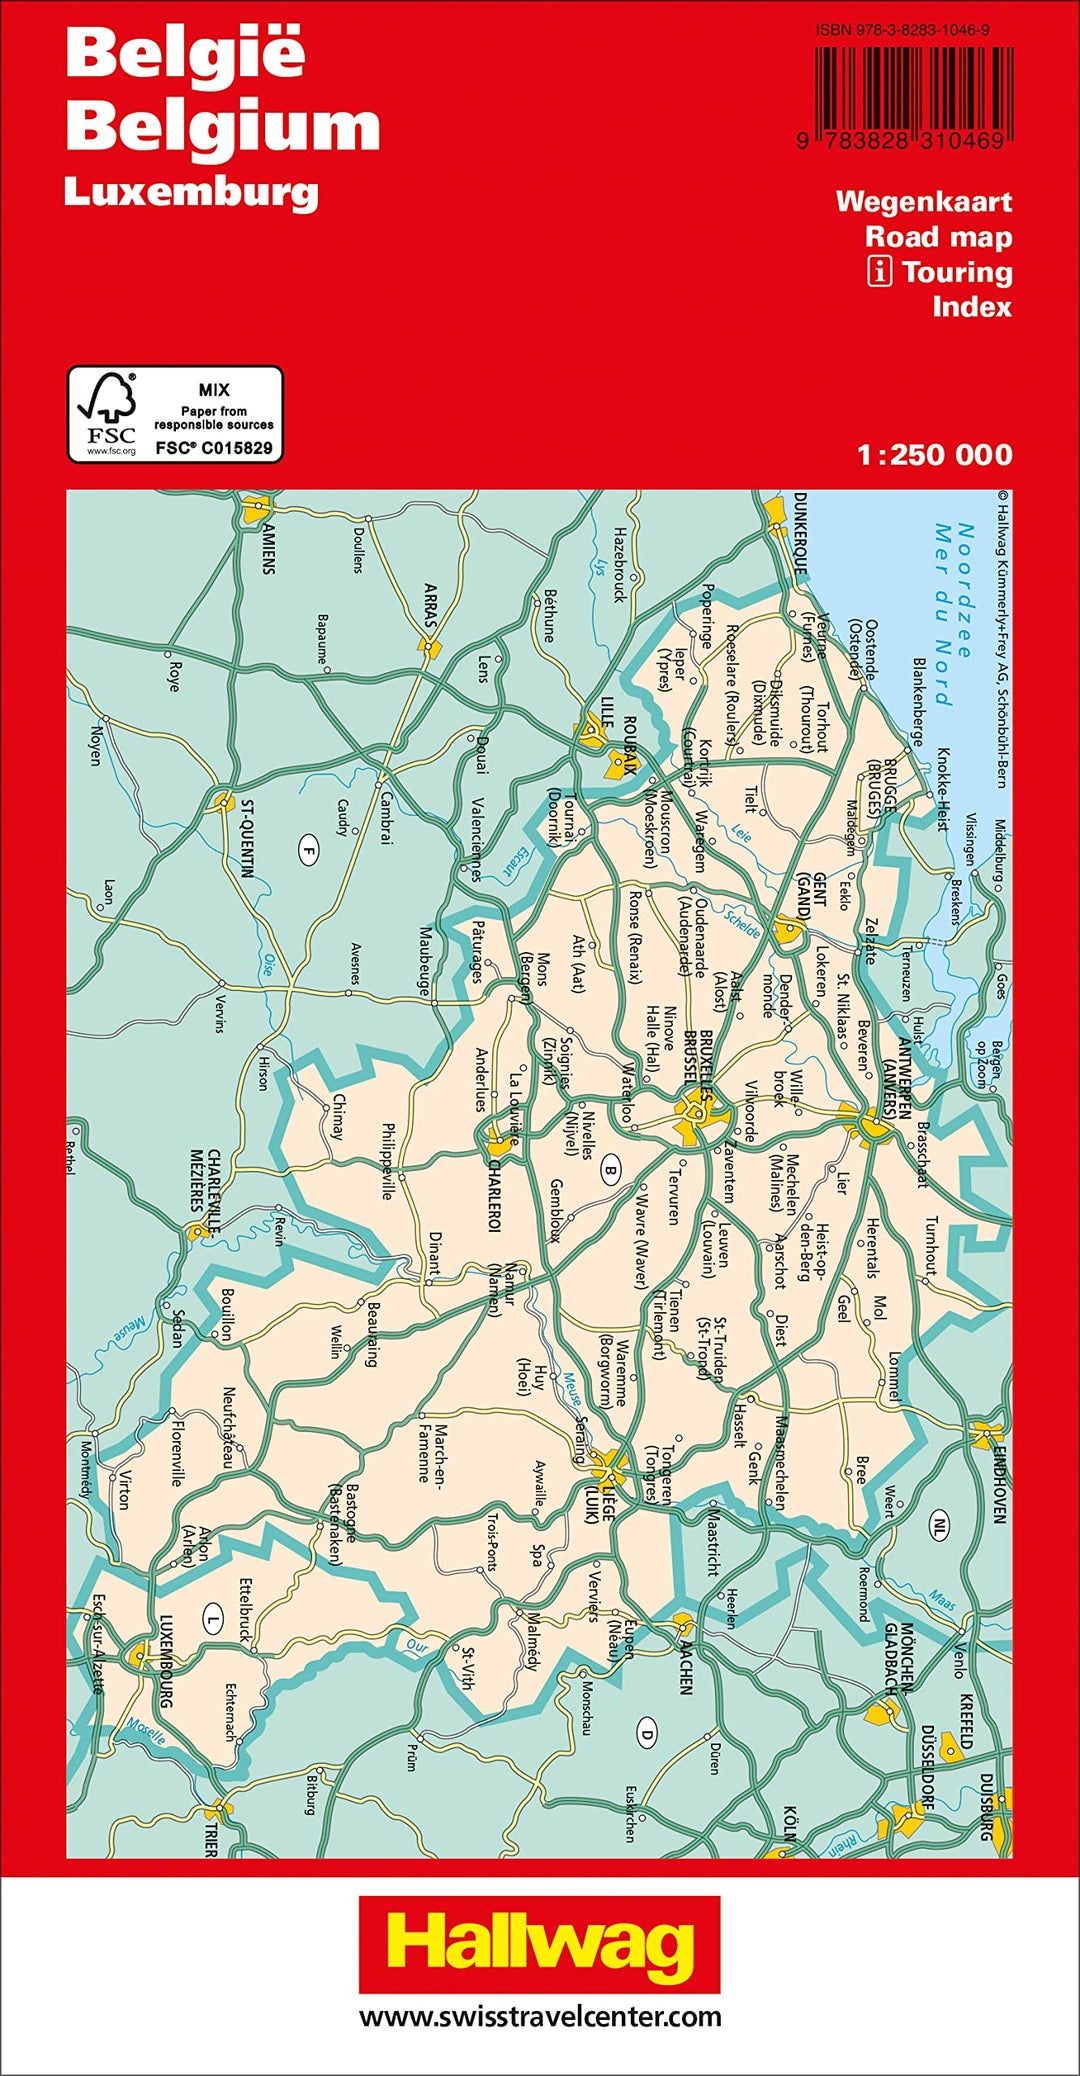 Carte routière - Belgique et Luxembourg | Hallwag carte pliée Hallwag 